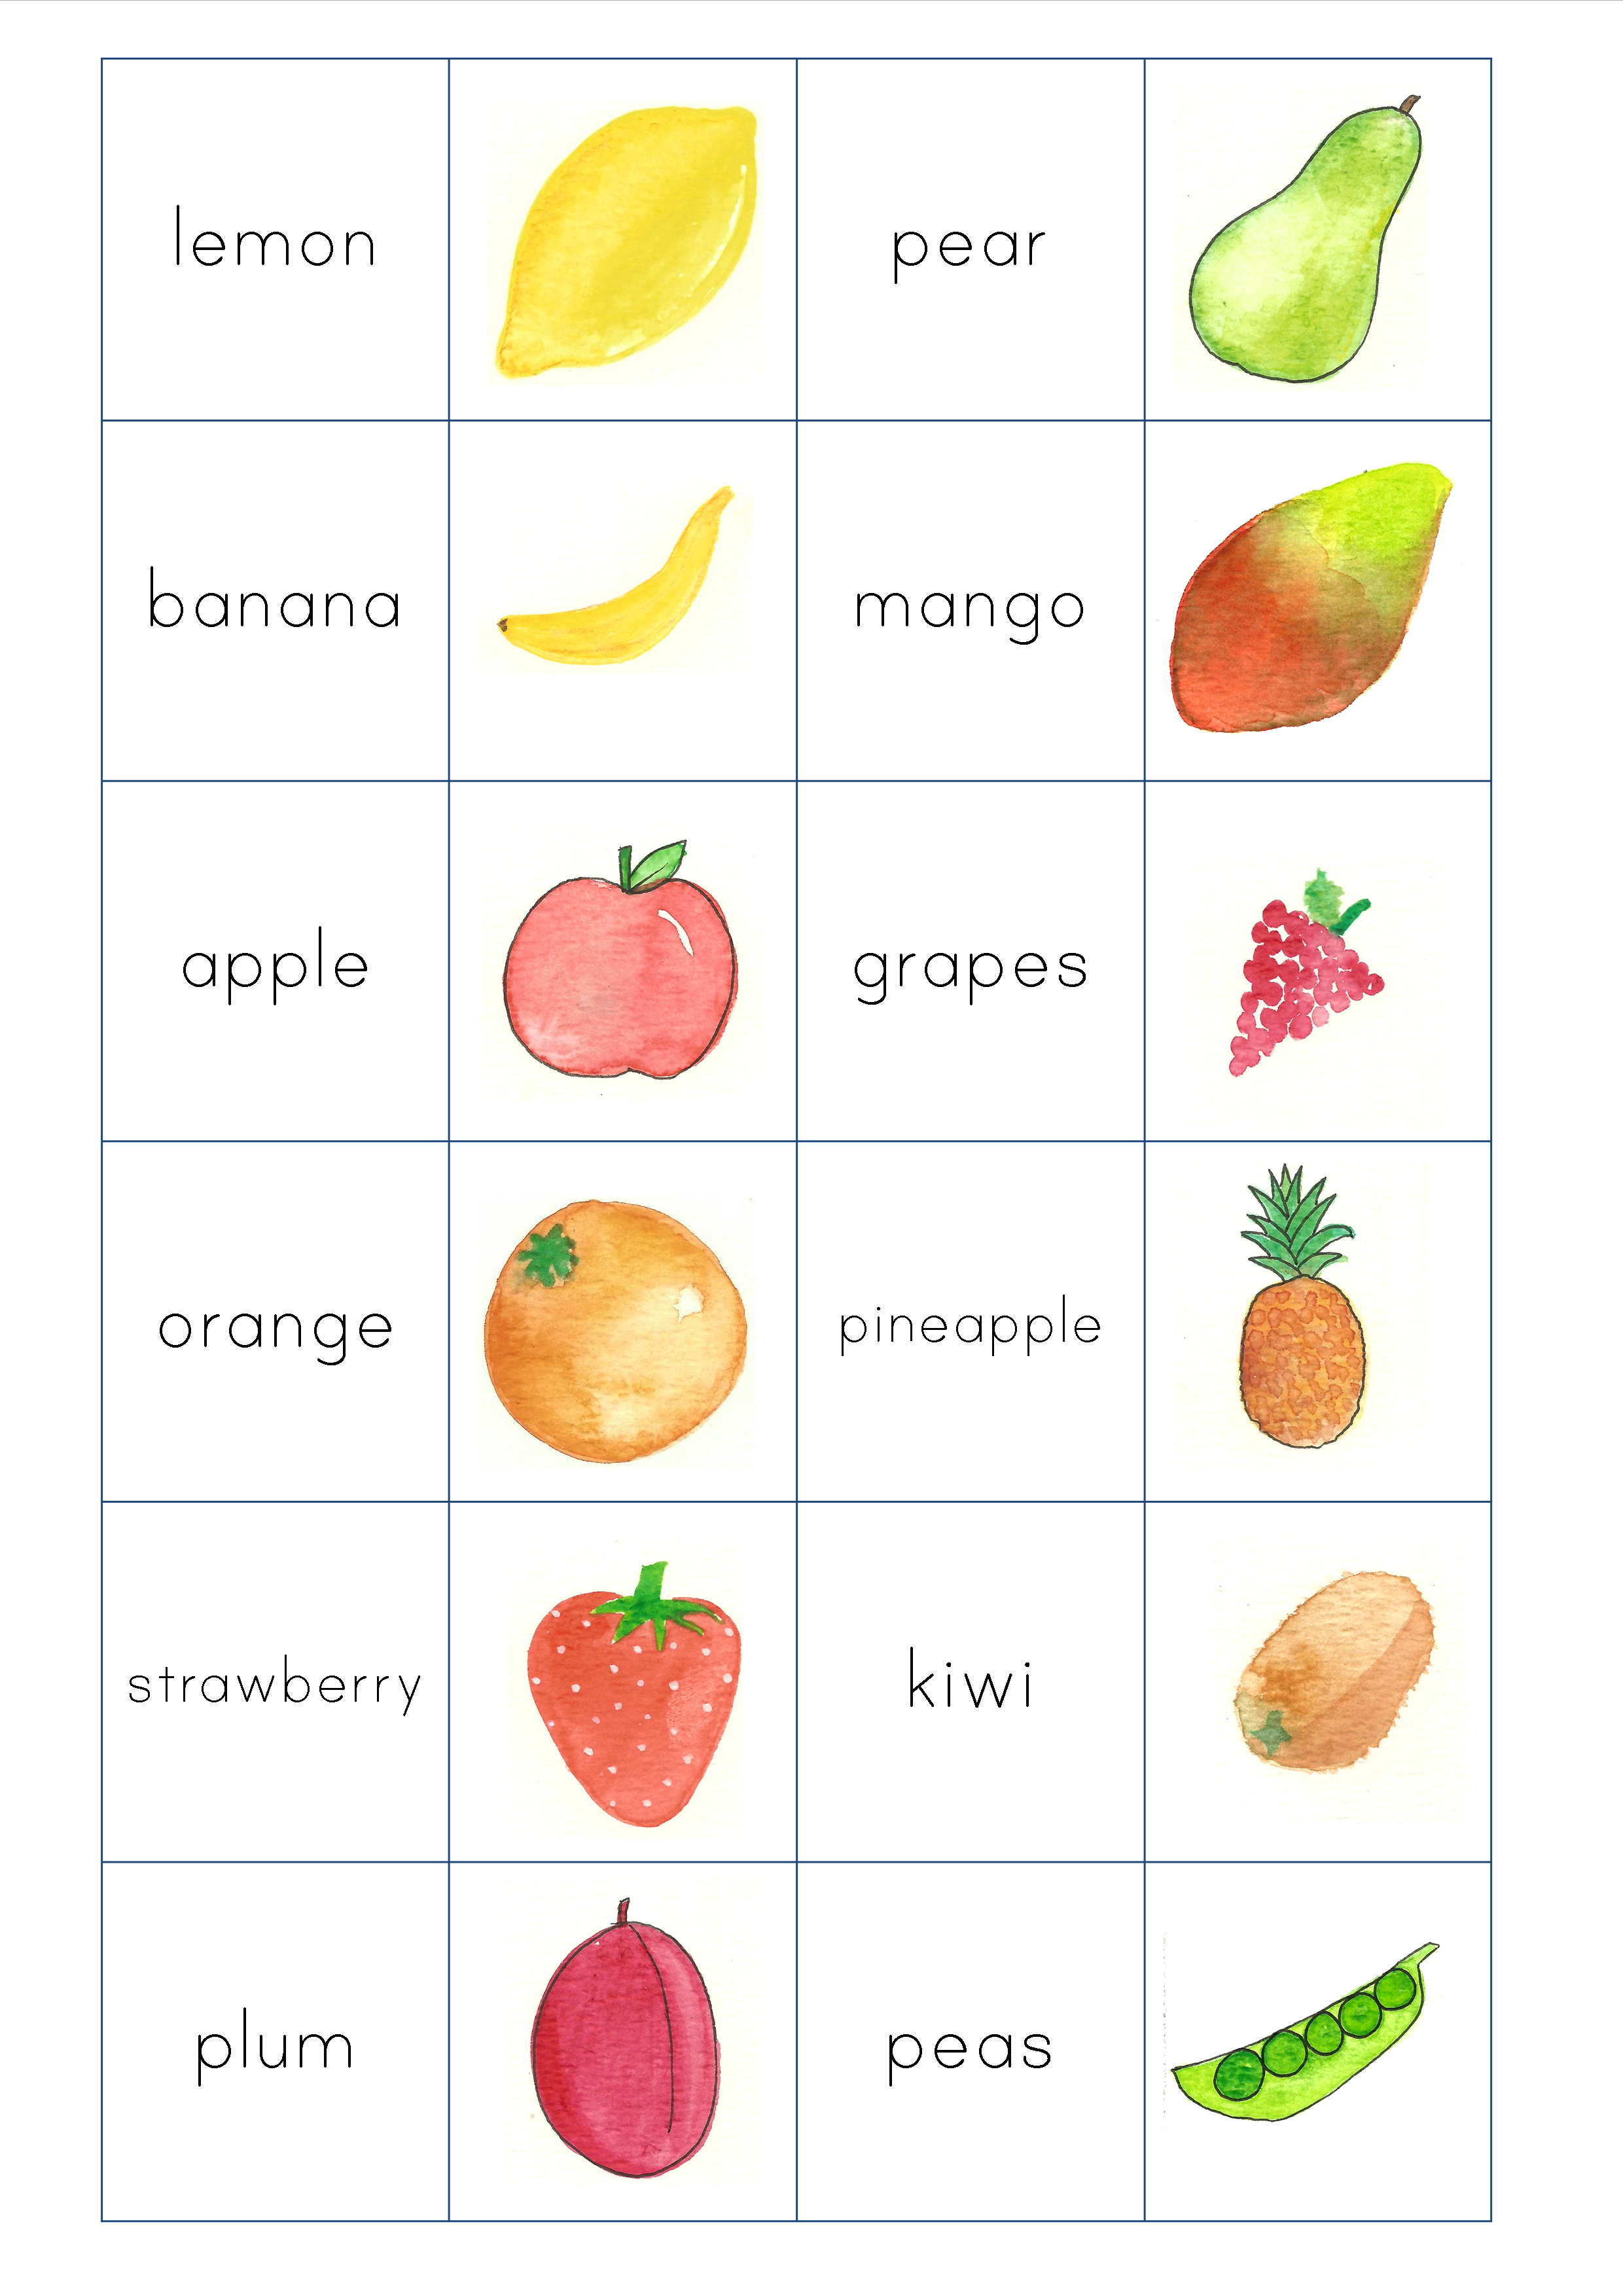 Загадки на английском про фрукты